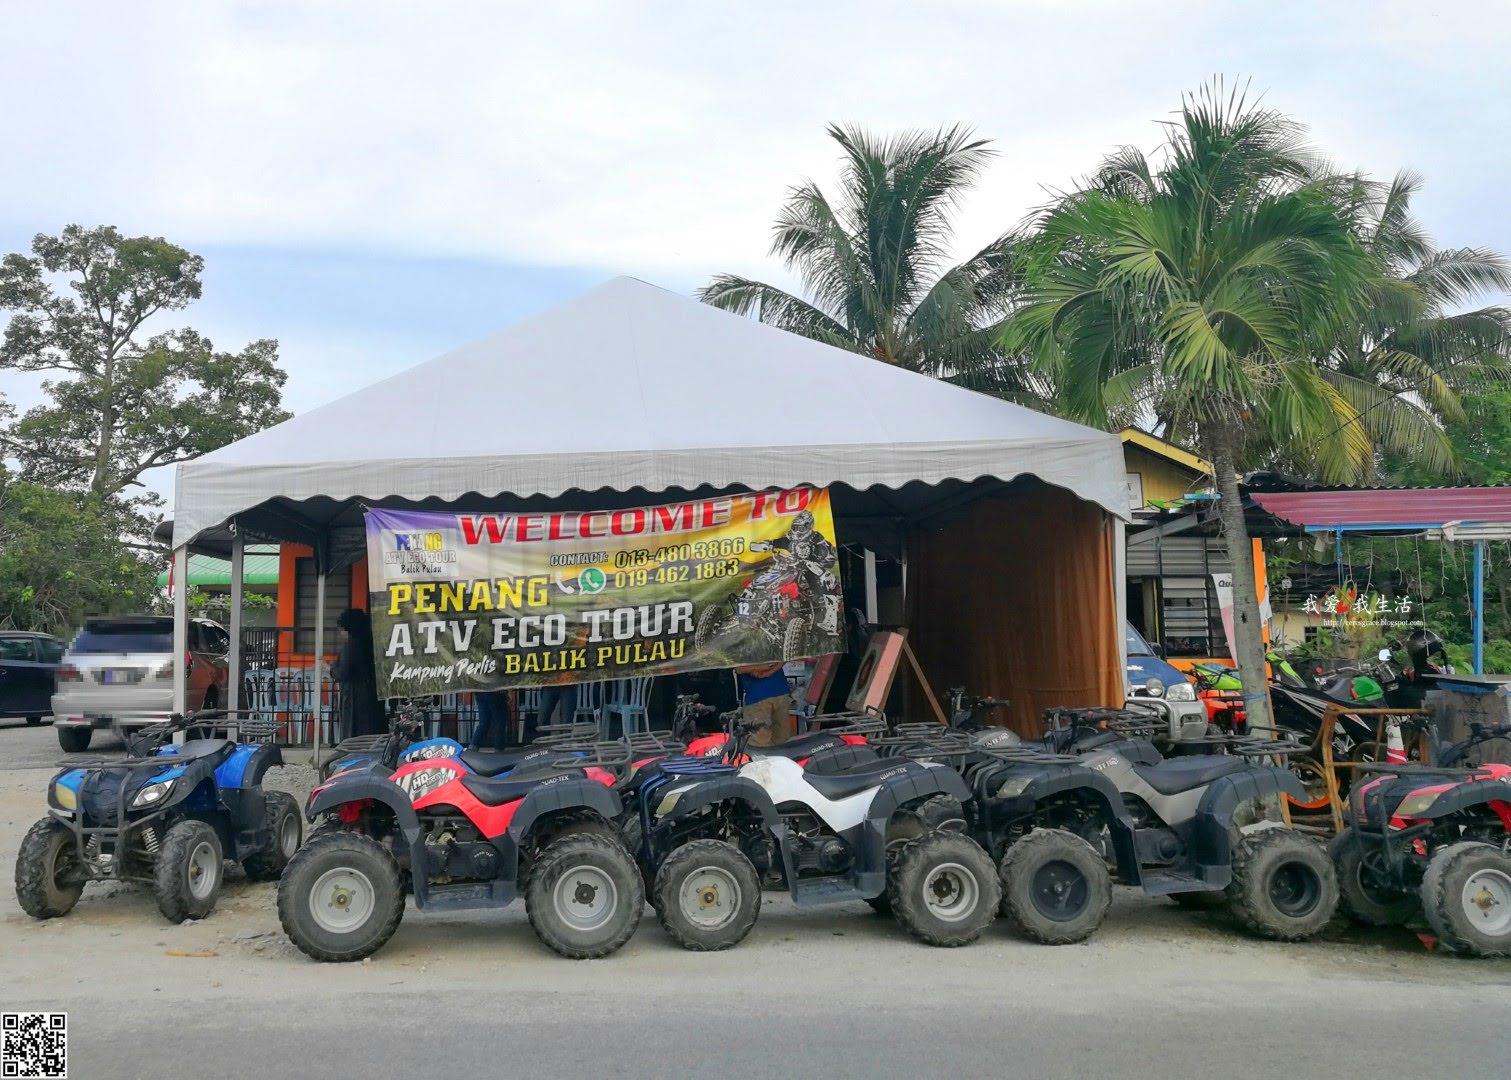 我爱我生活: 【马来西亚】槟城浮罗山背半日游 | Penang ATV Eco Tour + Metta Lodge 慈慧园